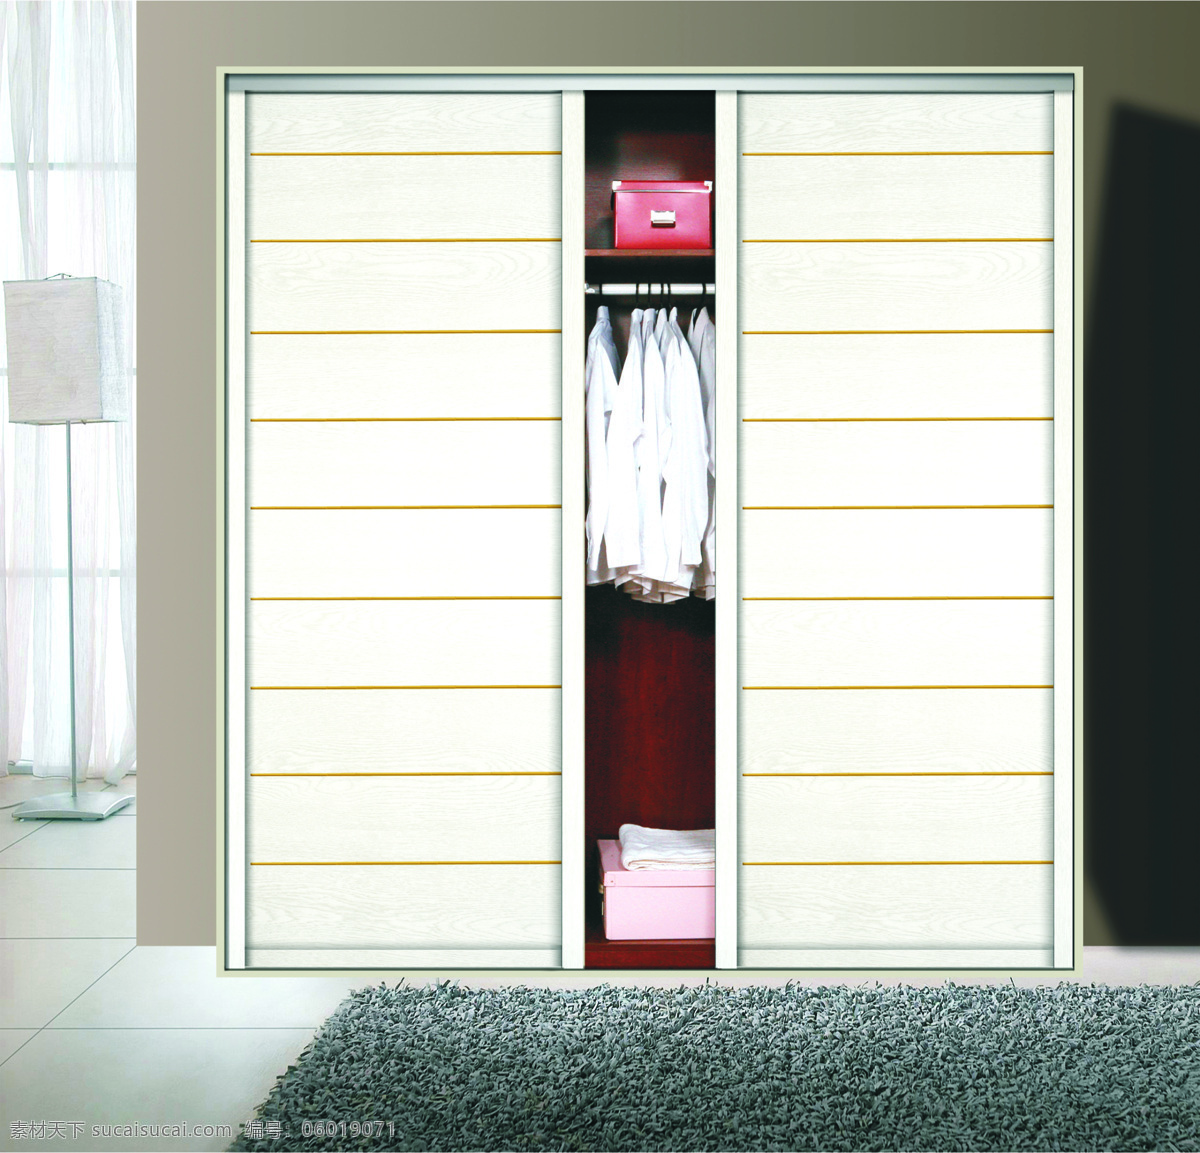 板材衣柜门 木板衣柜门 卧室衣柜门 衣柜门样式 环境设计 家居设计